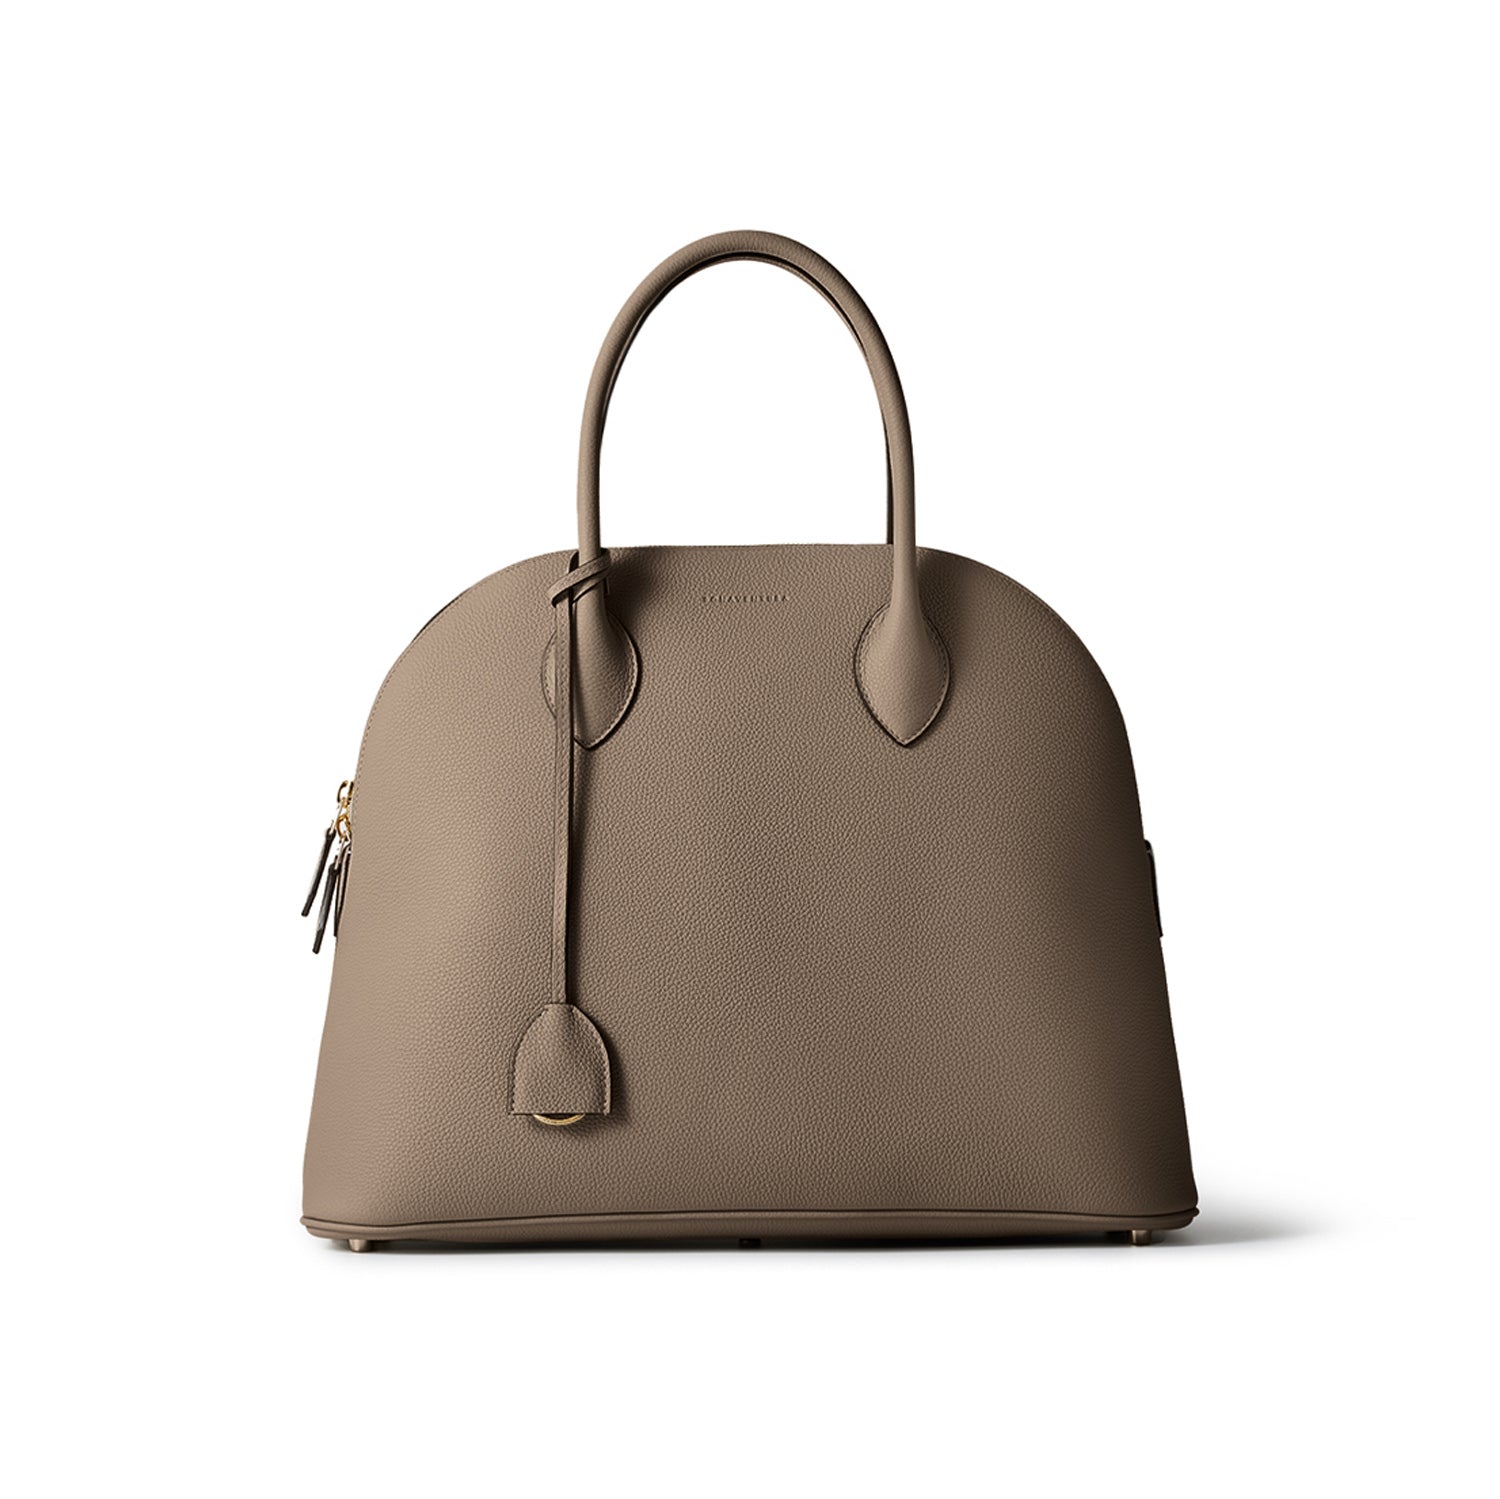 上質なレザーのバッグ / 鞄・スリーブケース – イタリア(ミラノ)発の高級革製品の通販BONAVENTURA